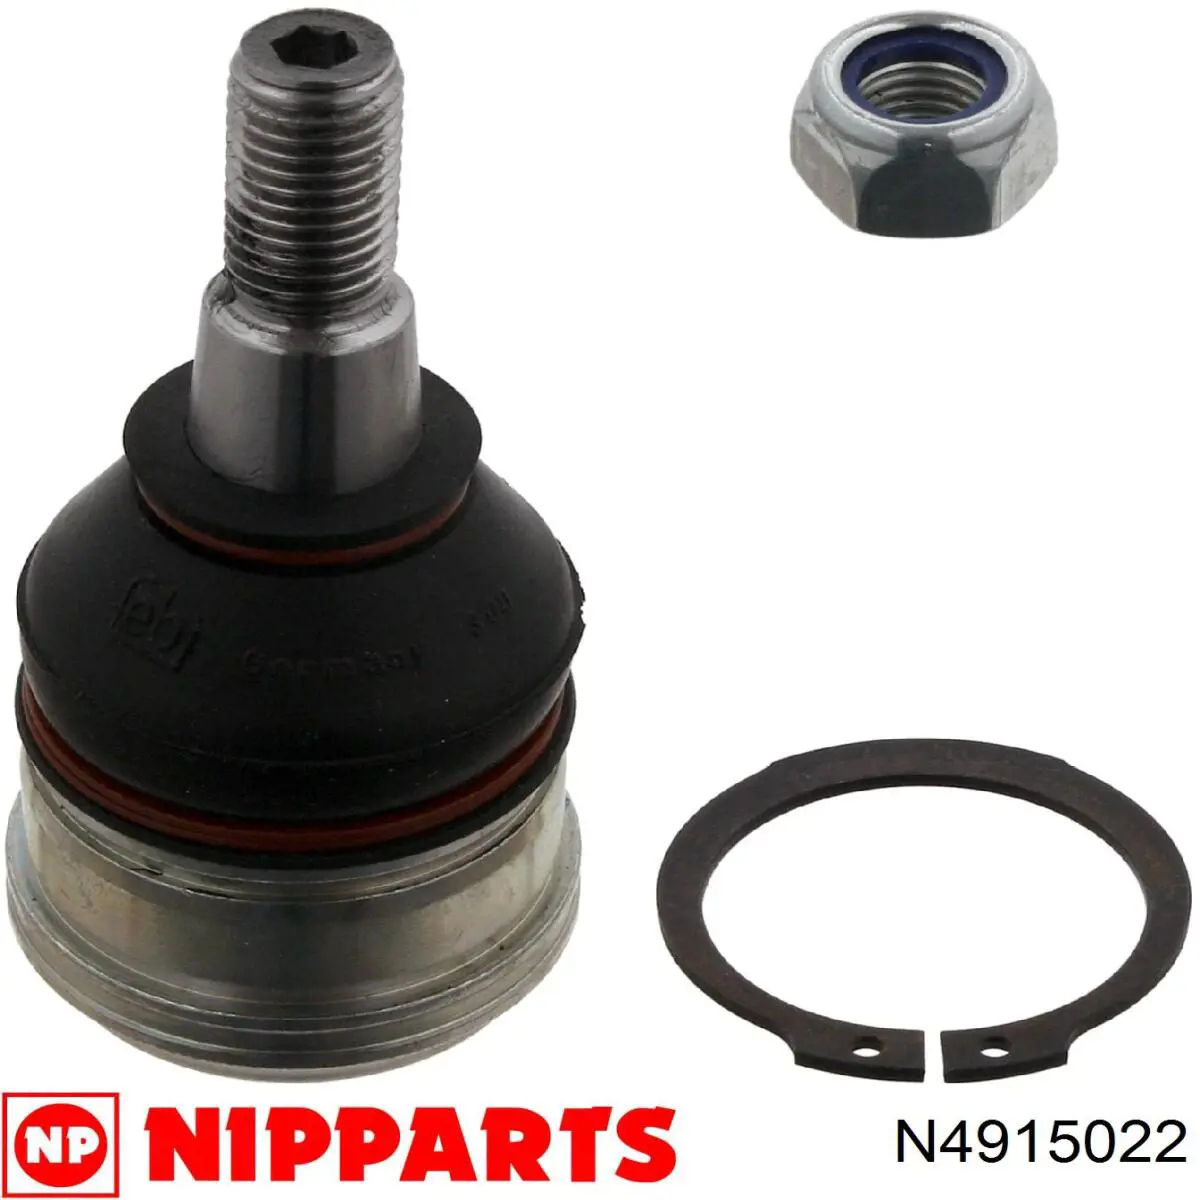 N4915022 Nipparts barra oscilante, suspensión de ruedas delantera, inferior derecha